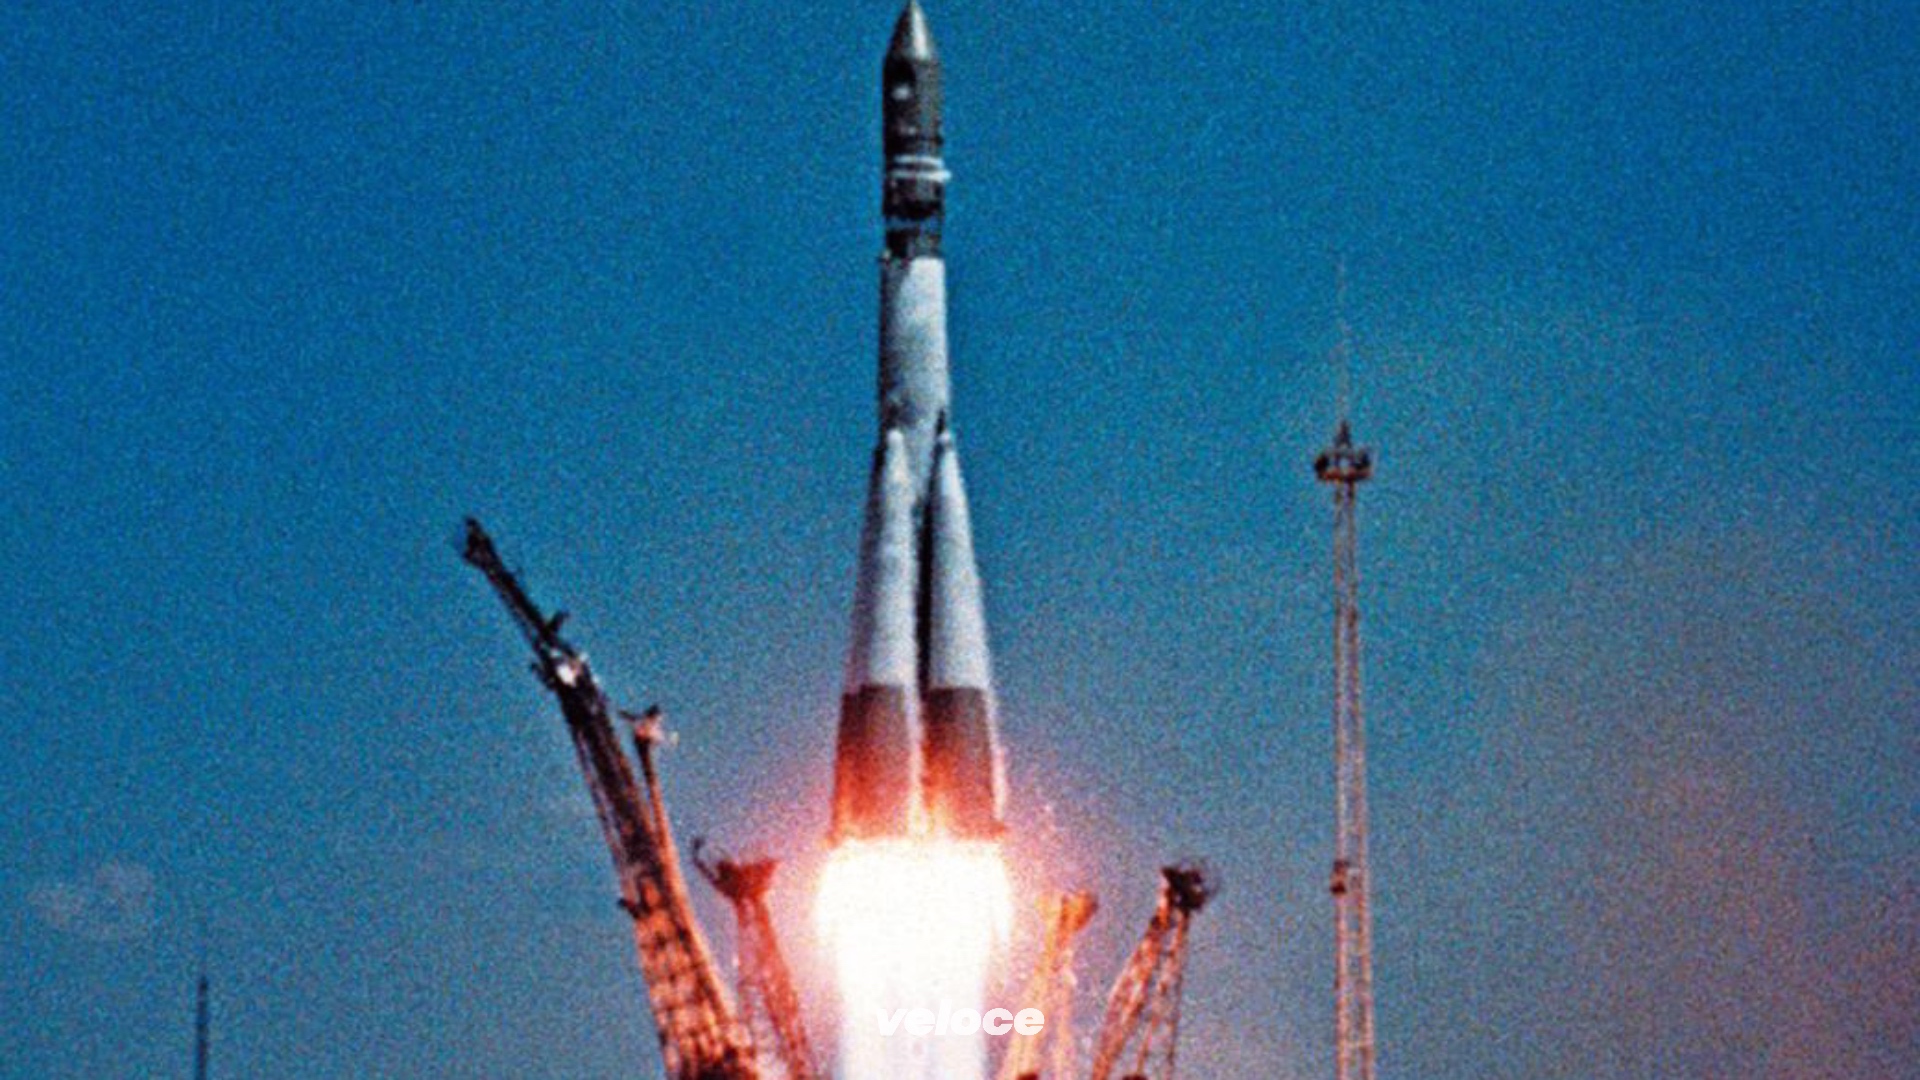 Фото ракеты гагарина. Ракета Юрия Гагарина Восток-1. Байконур Восток 1 1961. Байконур Восток 1 Гагарин. Восток-1 космический корабль Гагарин.